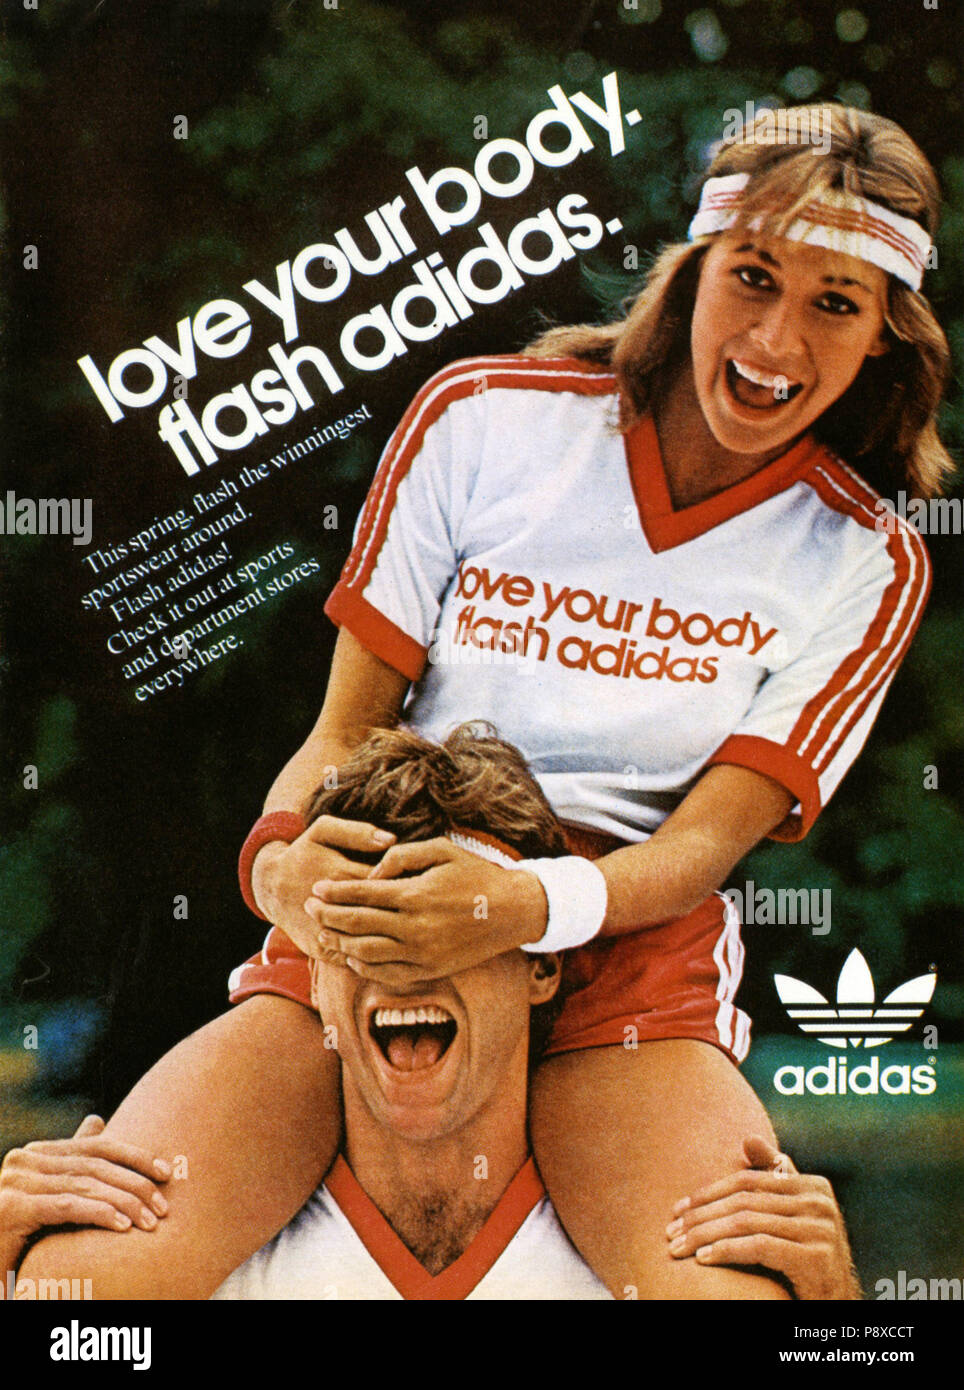 Gran roble de ahora en adelante olvidar 1980s USA Adidas Magazine Advert Stock Photo - Alamy